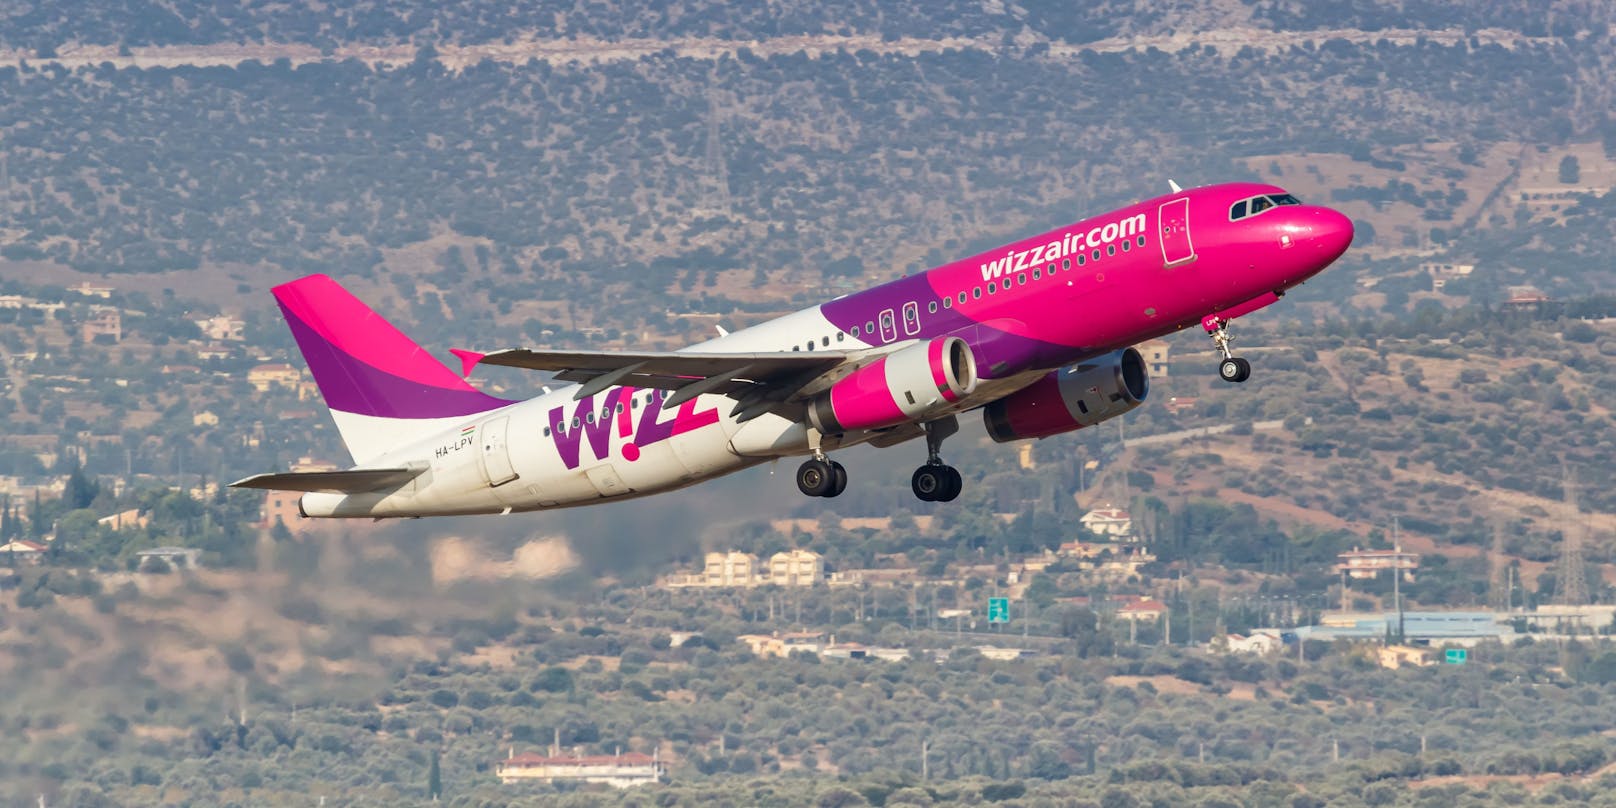 Künftig will Wizz Air Flughäfen wie jene in Malta, Mykonos, Olbia oder Lissabon nicht mehr von Wien aus anfliegen.